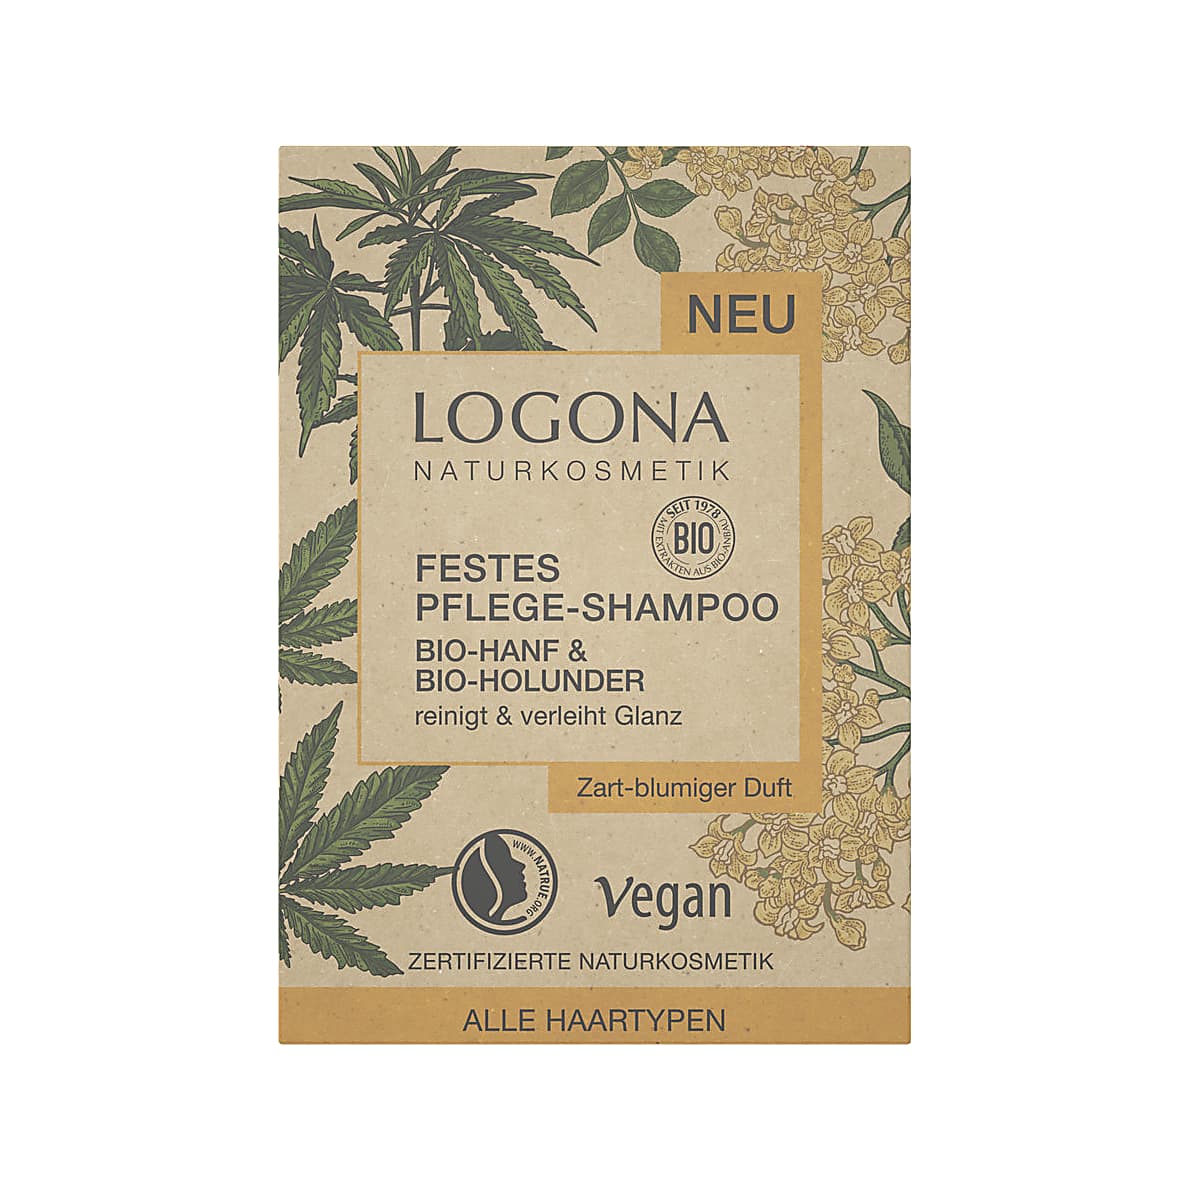 Logona Shampoo Bar - Organic Hemp & Organic Elderberry